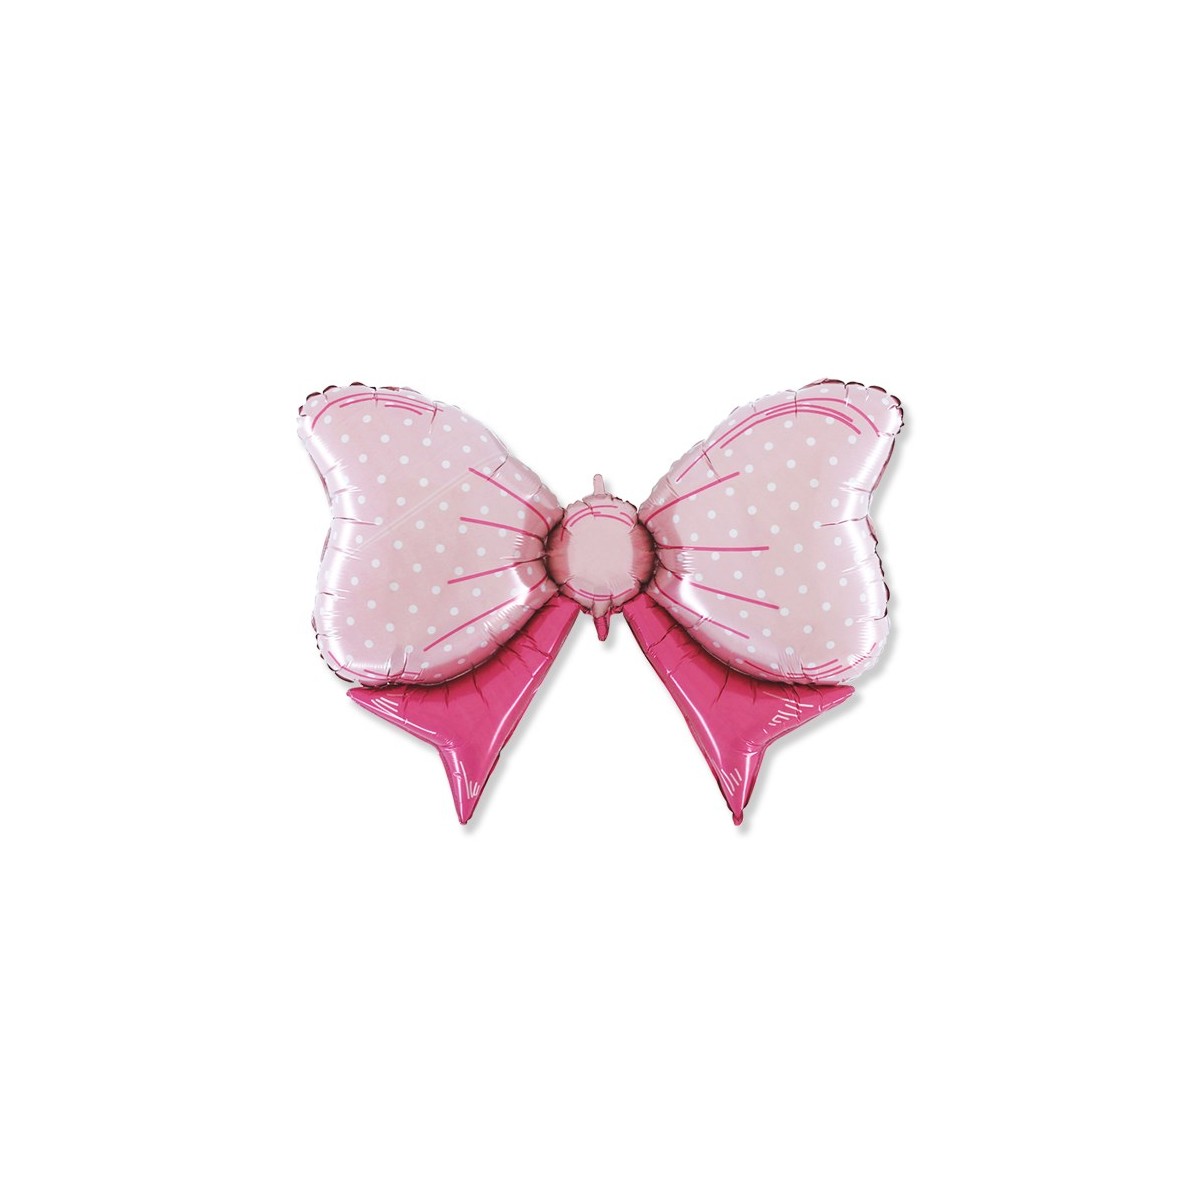 Supershape 43"/109 cm fiocco rosa